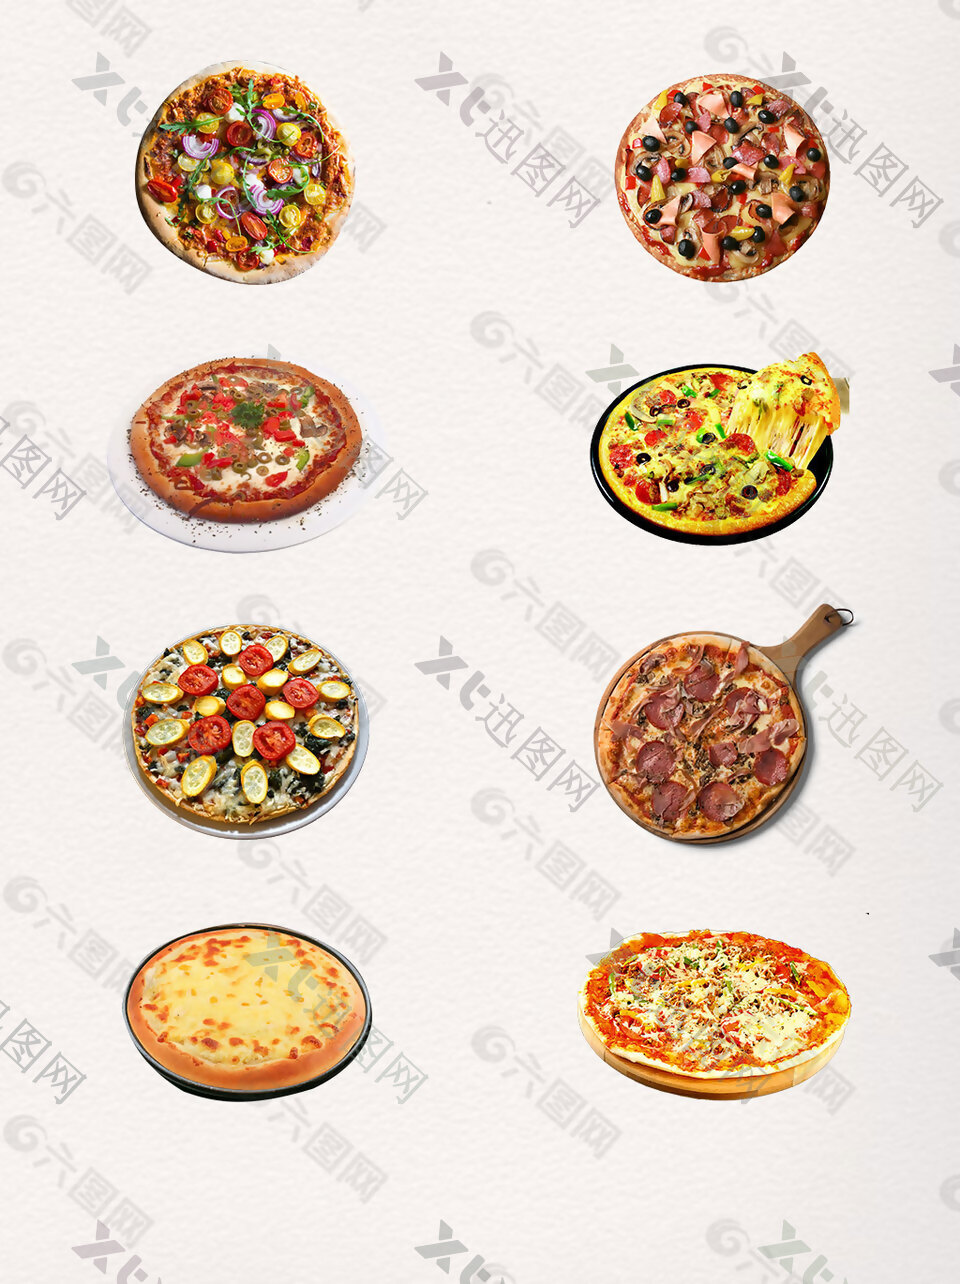 水果烤肠披萨实物元素